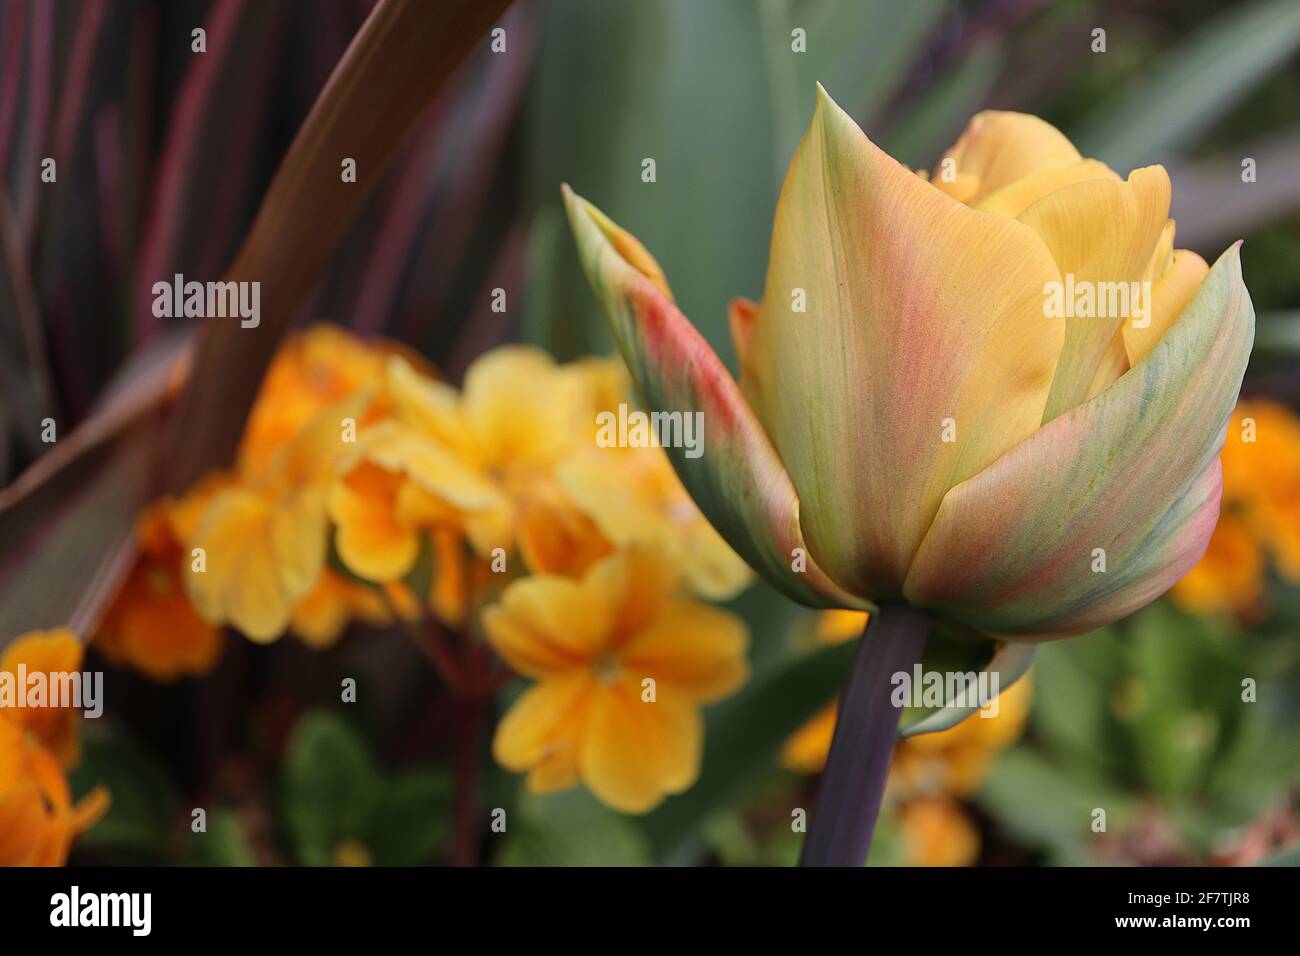 Tulipa ‘Monte Orange’ Double Early 2 tulipano Monte Orange - fiori gialli arancio con striature verdi, rosse e arancioni, gambo viola. Foto Stock